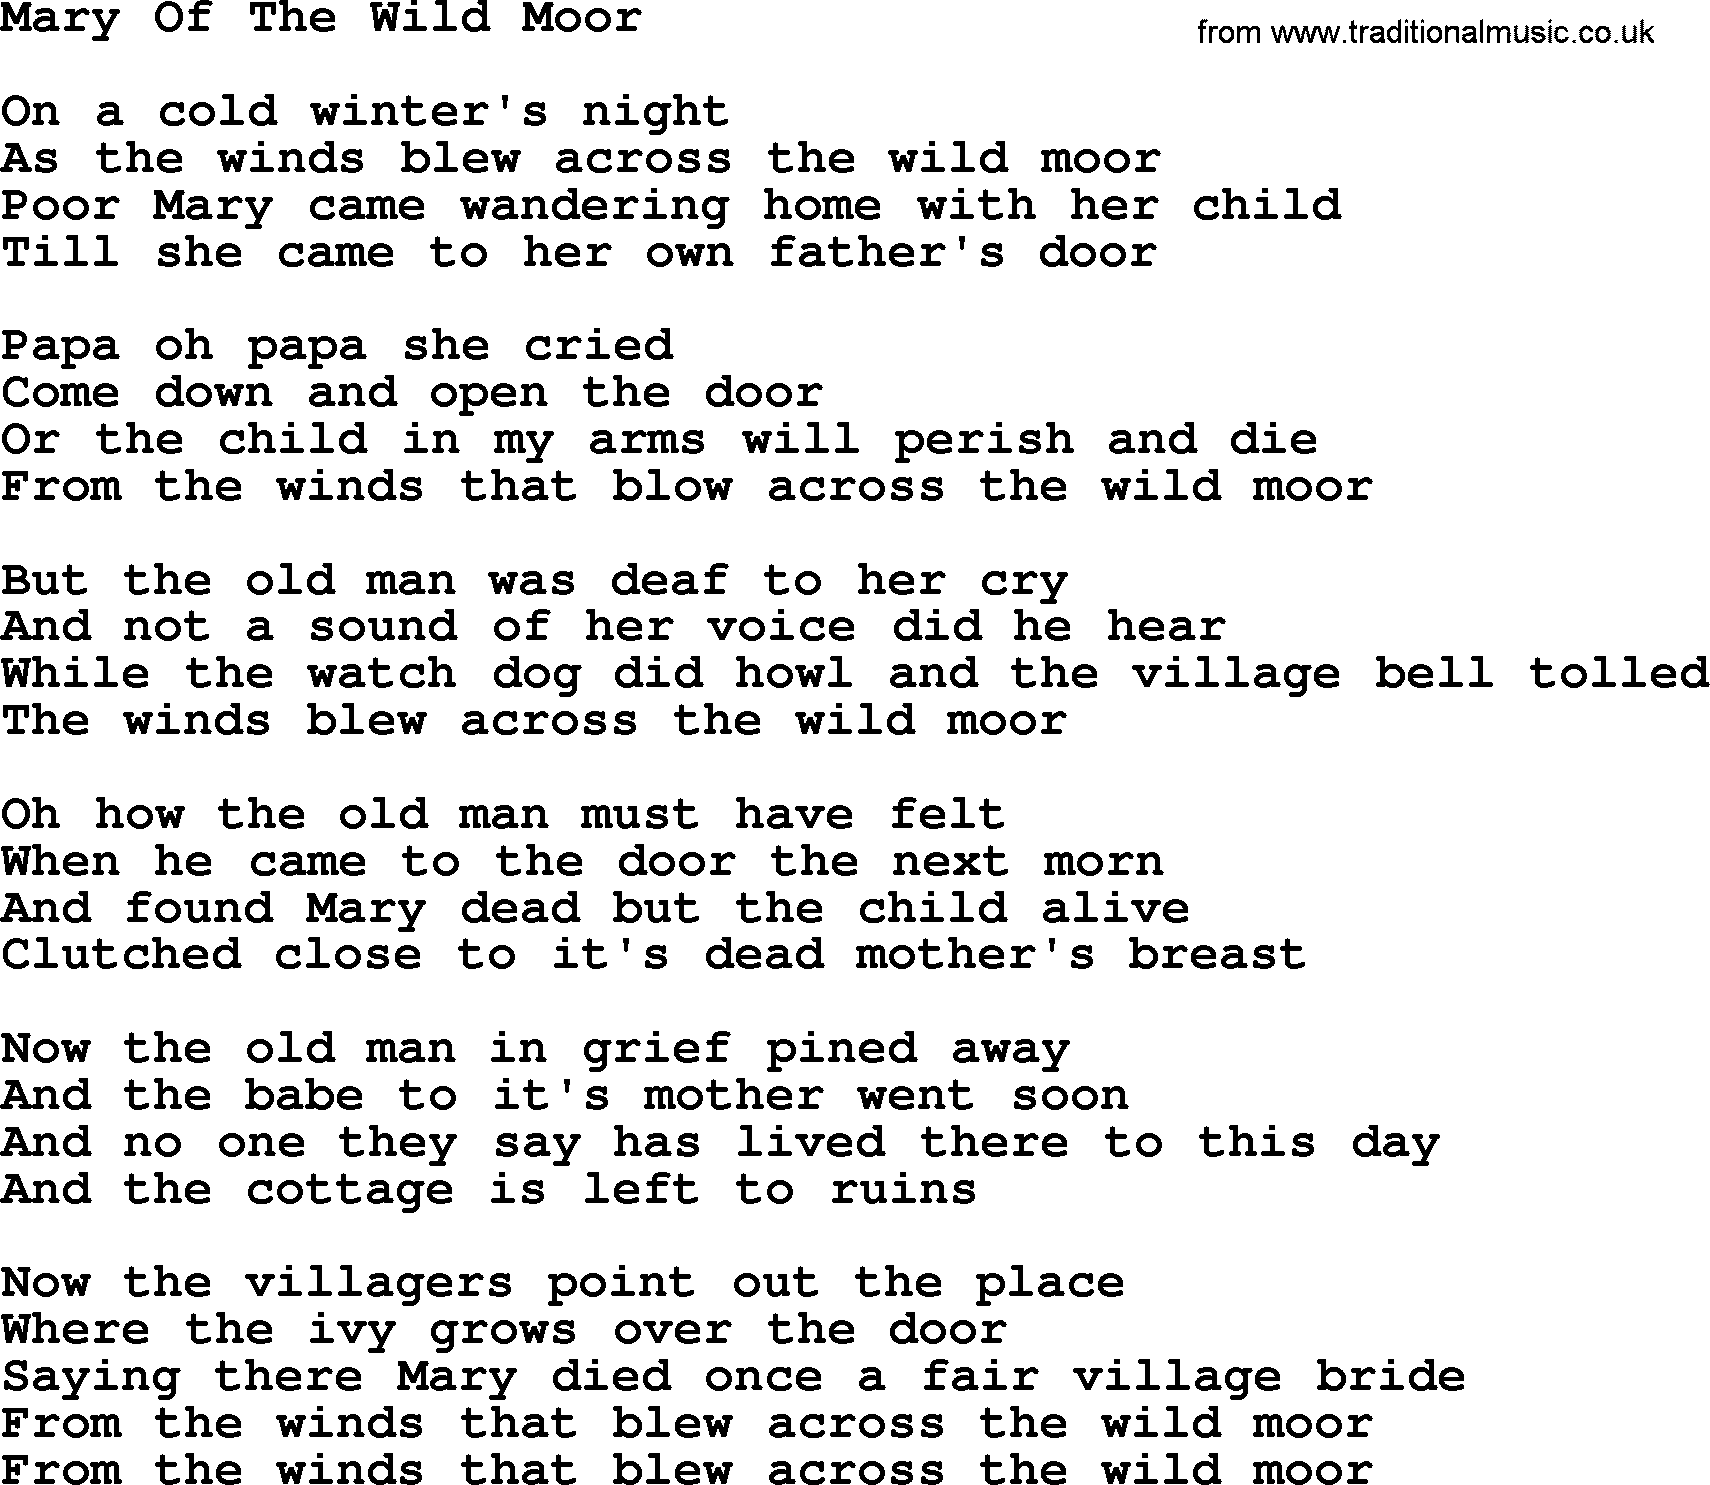 Dolly Parton song Mary Of The Wild Moor.txt lyrics